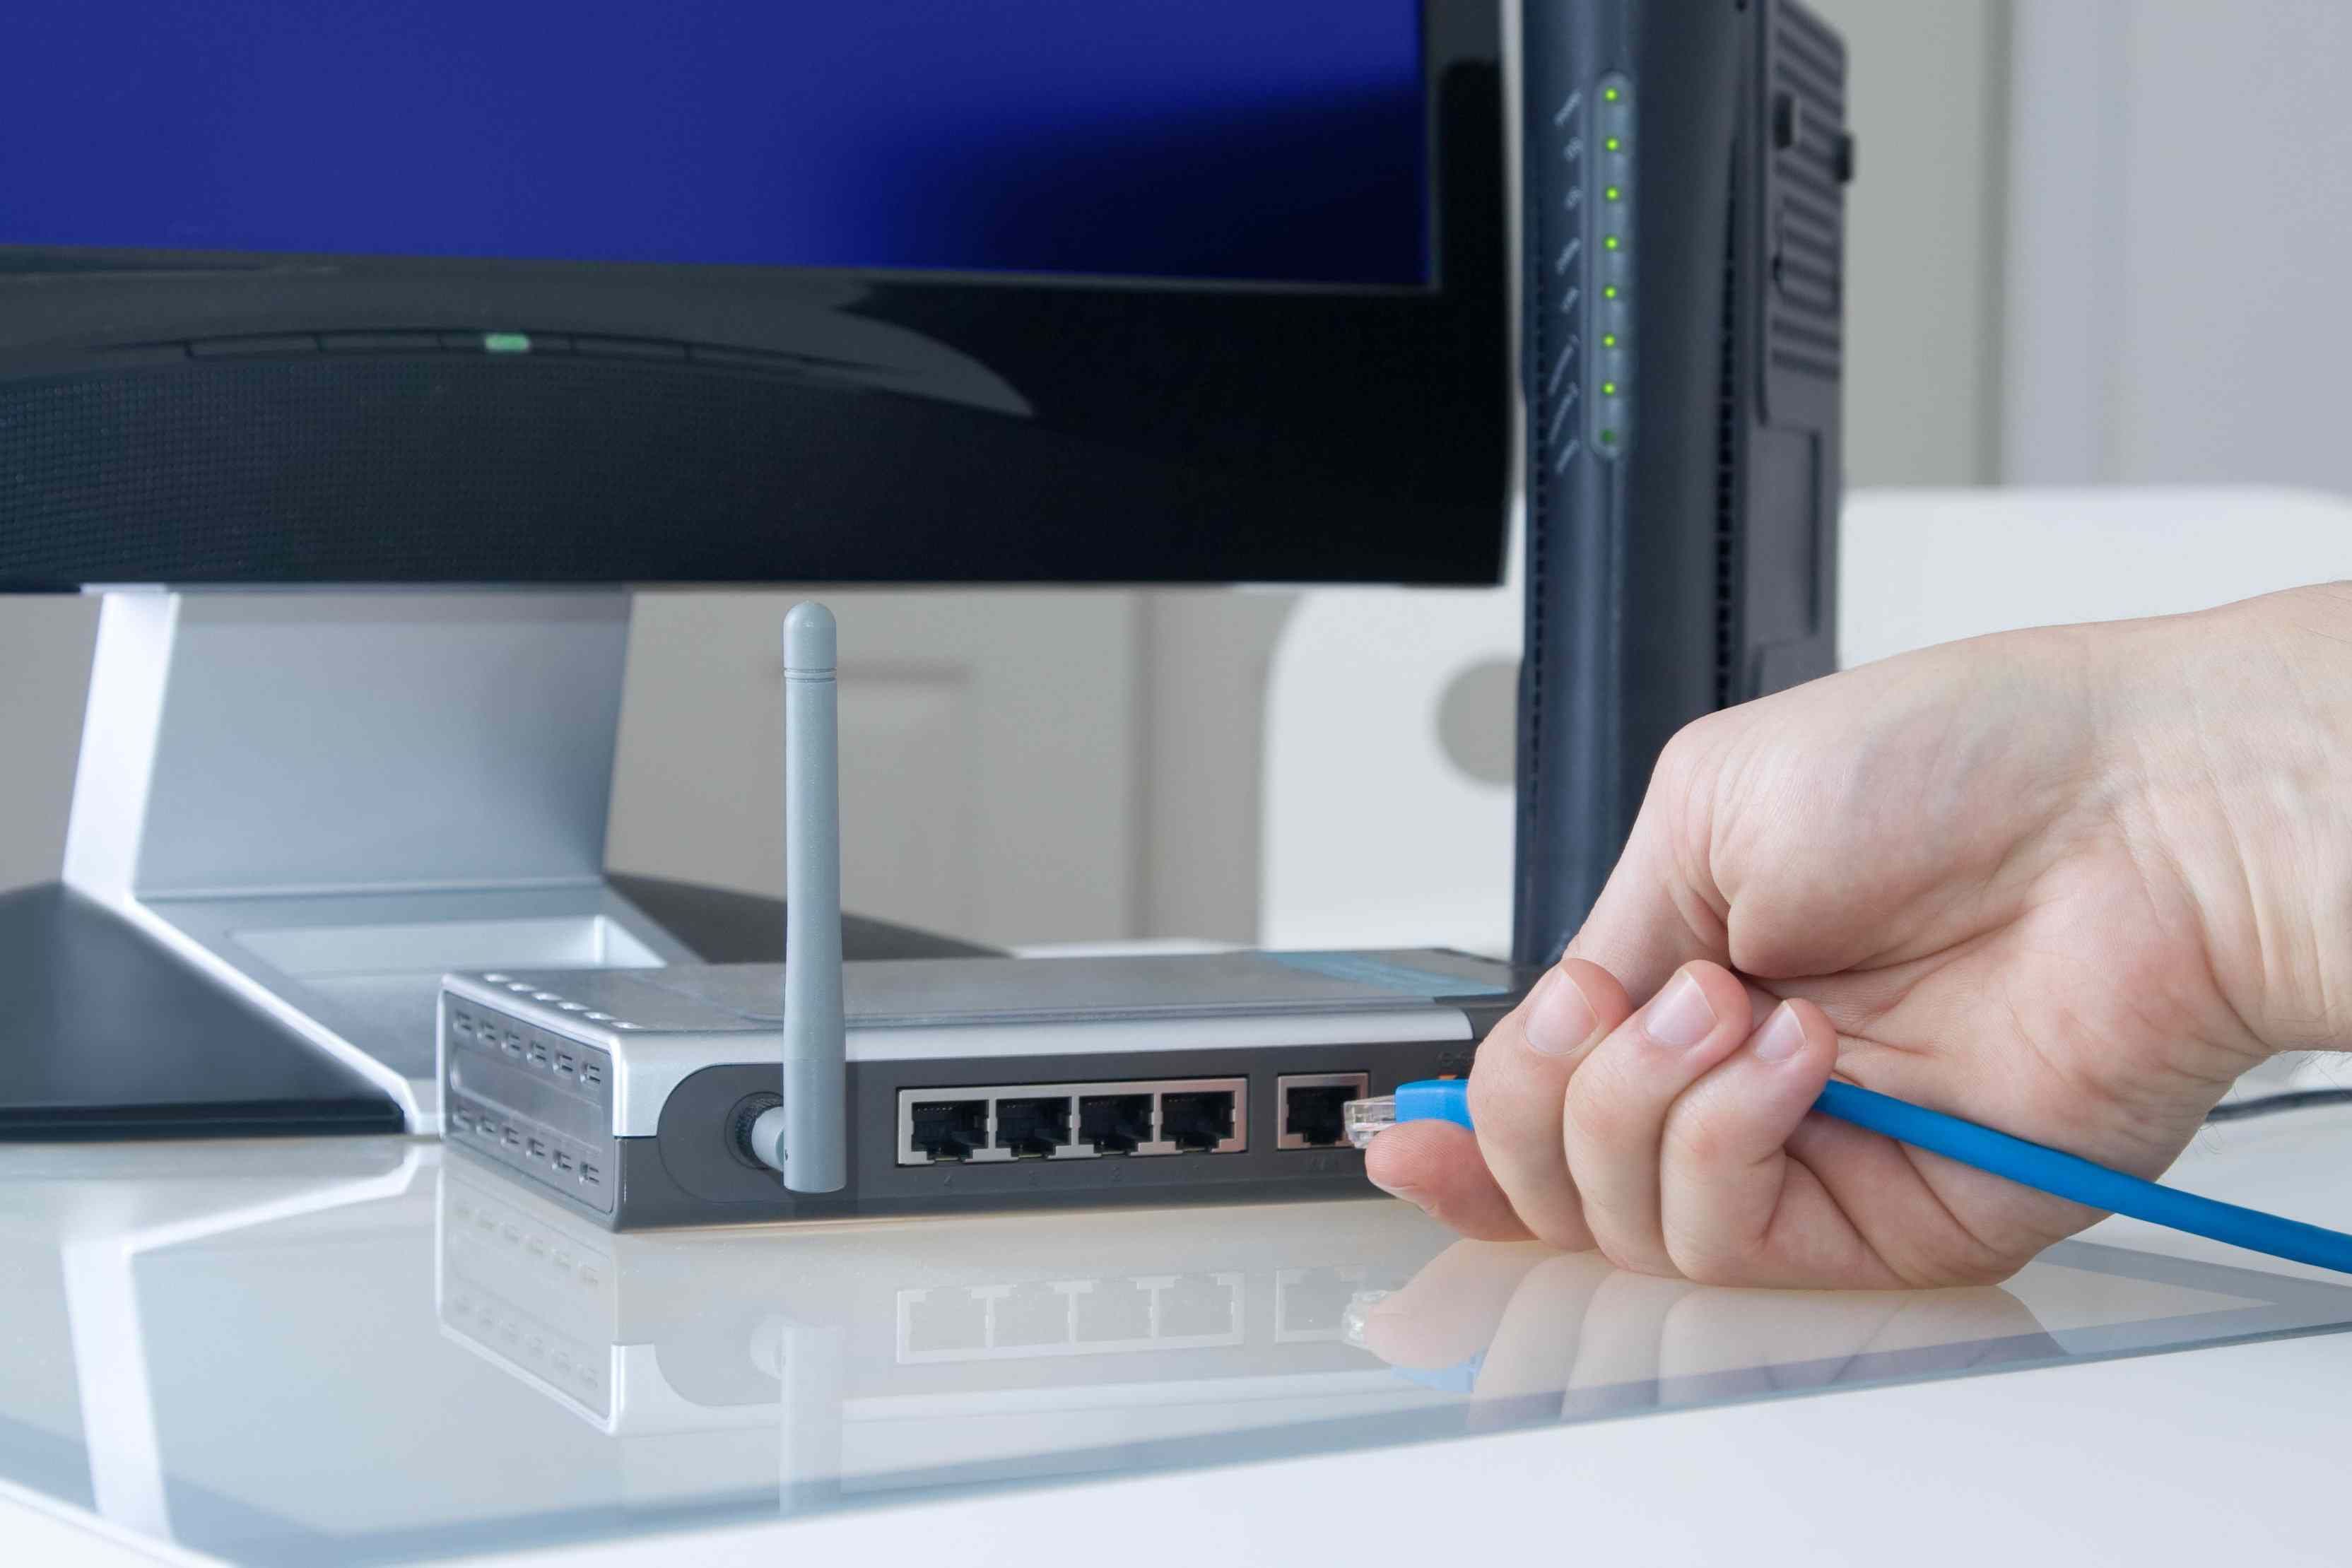 Кабель Ethernet домашней сети подключается к маршрутизатору